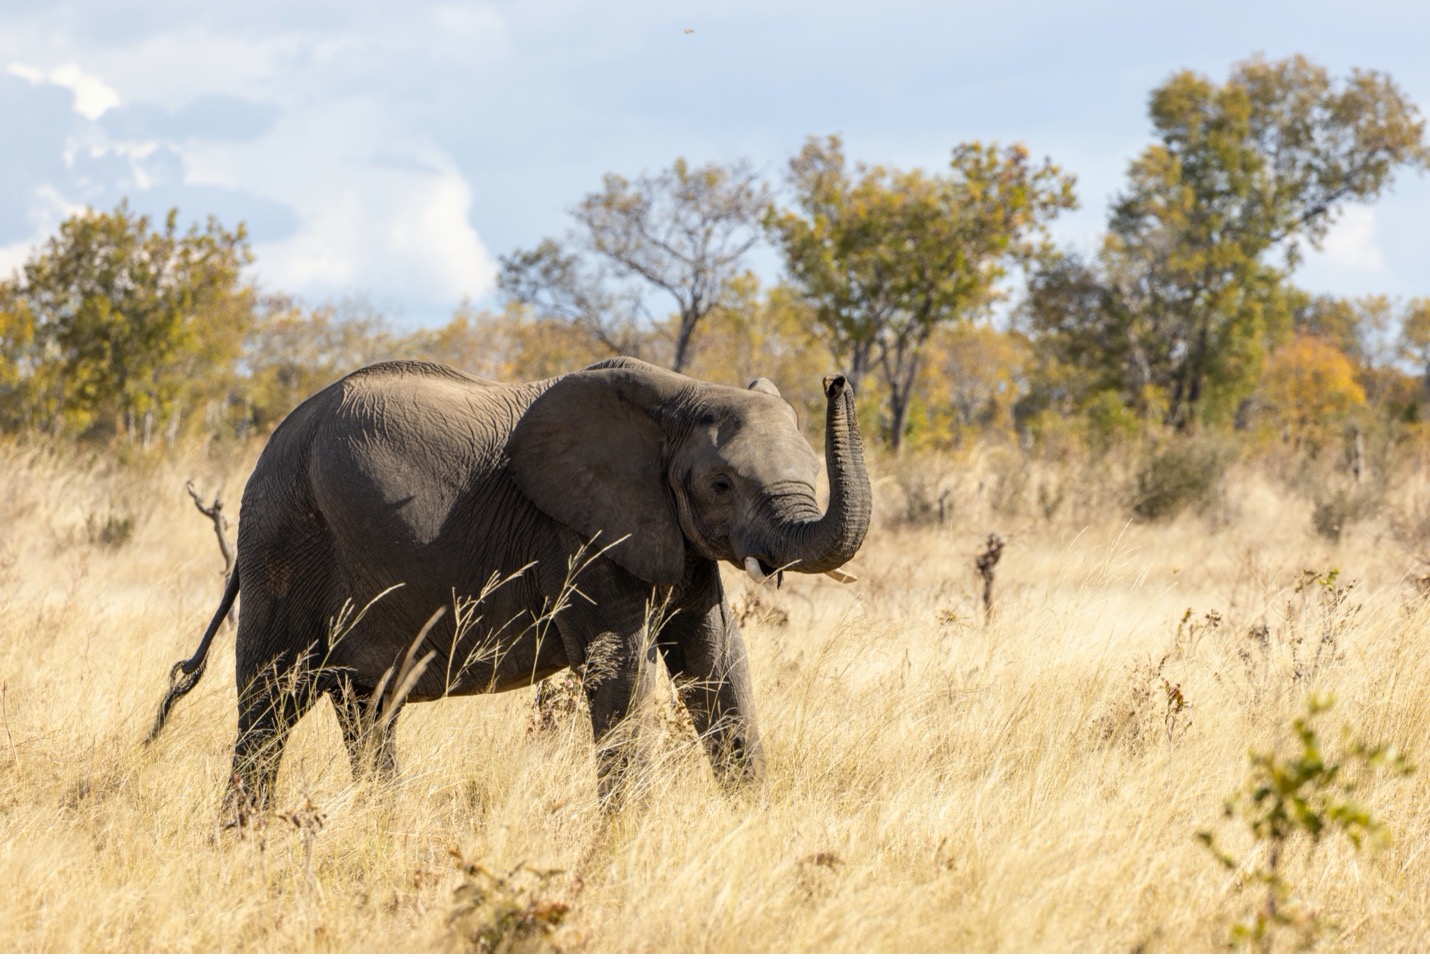 an elephant raises its trunk as it walks across the savanna